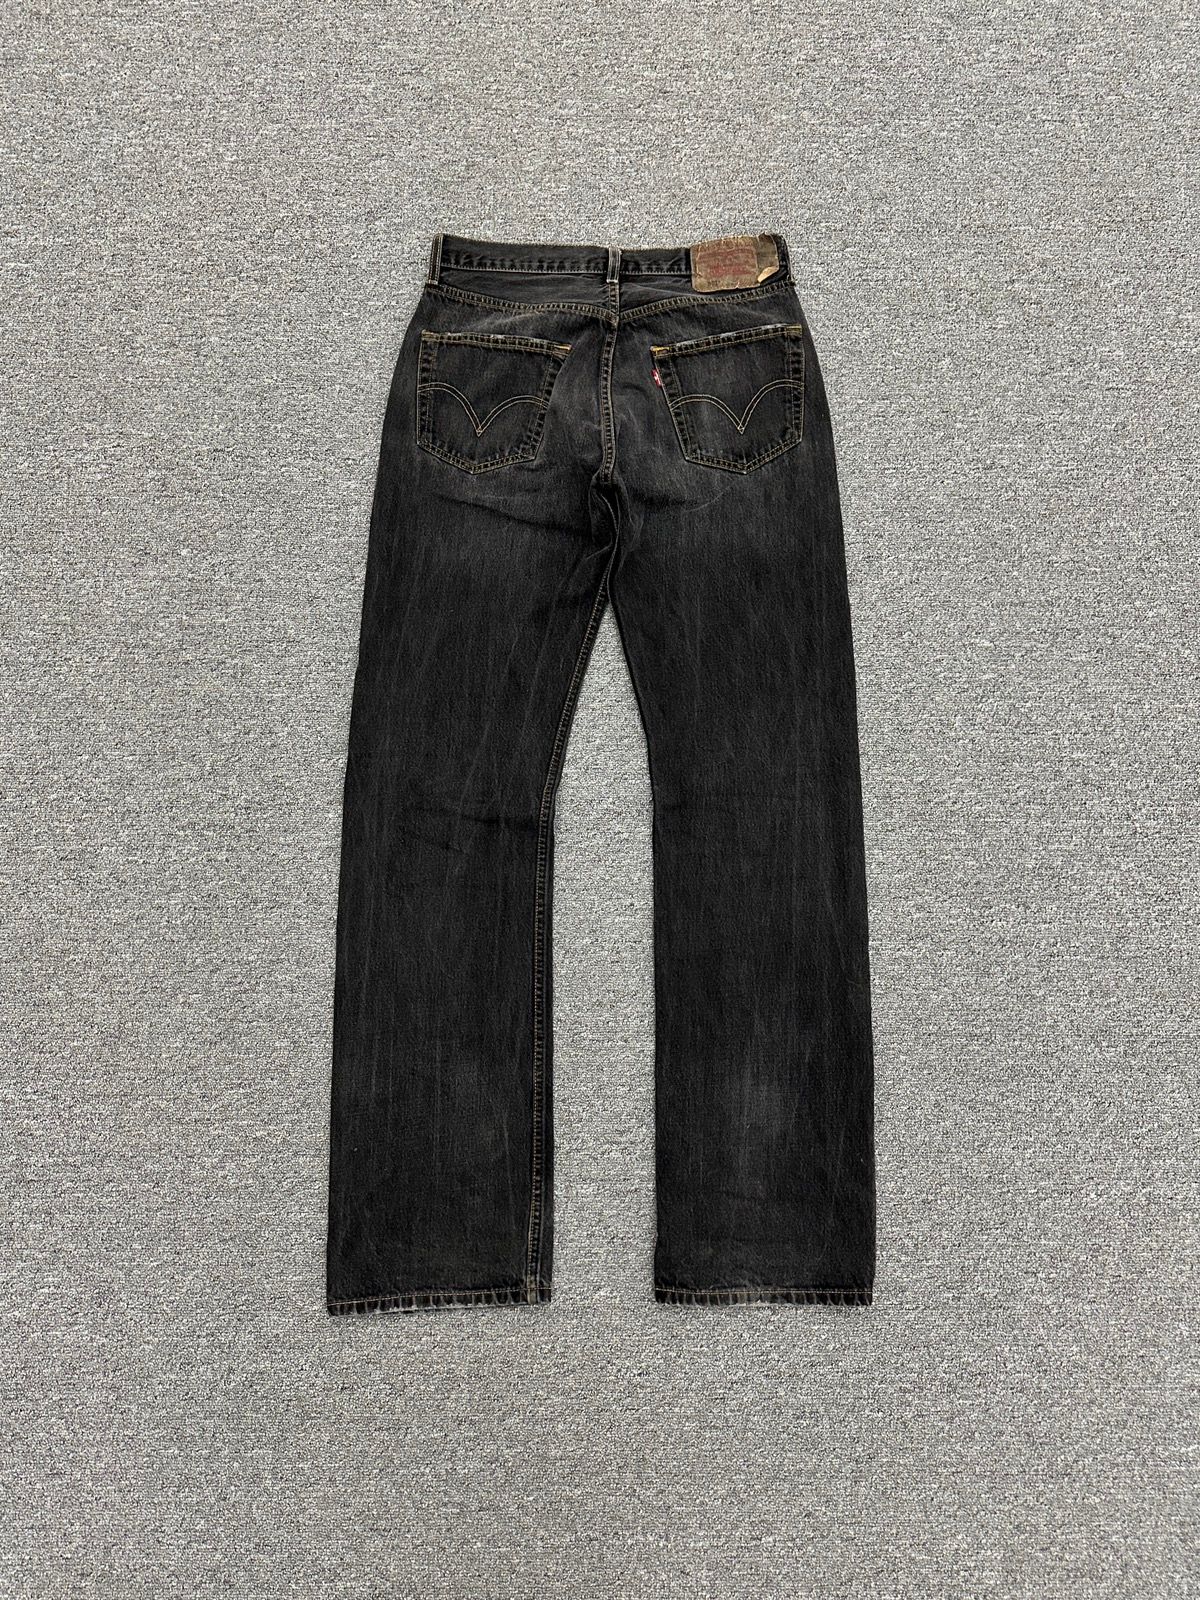 Vintage Vintage 501 Levi’s Faded Black Denim Pants Size US 32 / EU 48 - 2 Preview